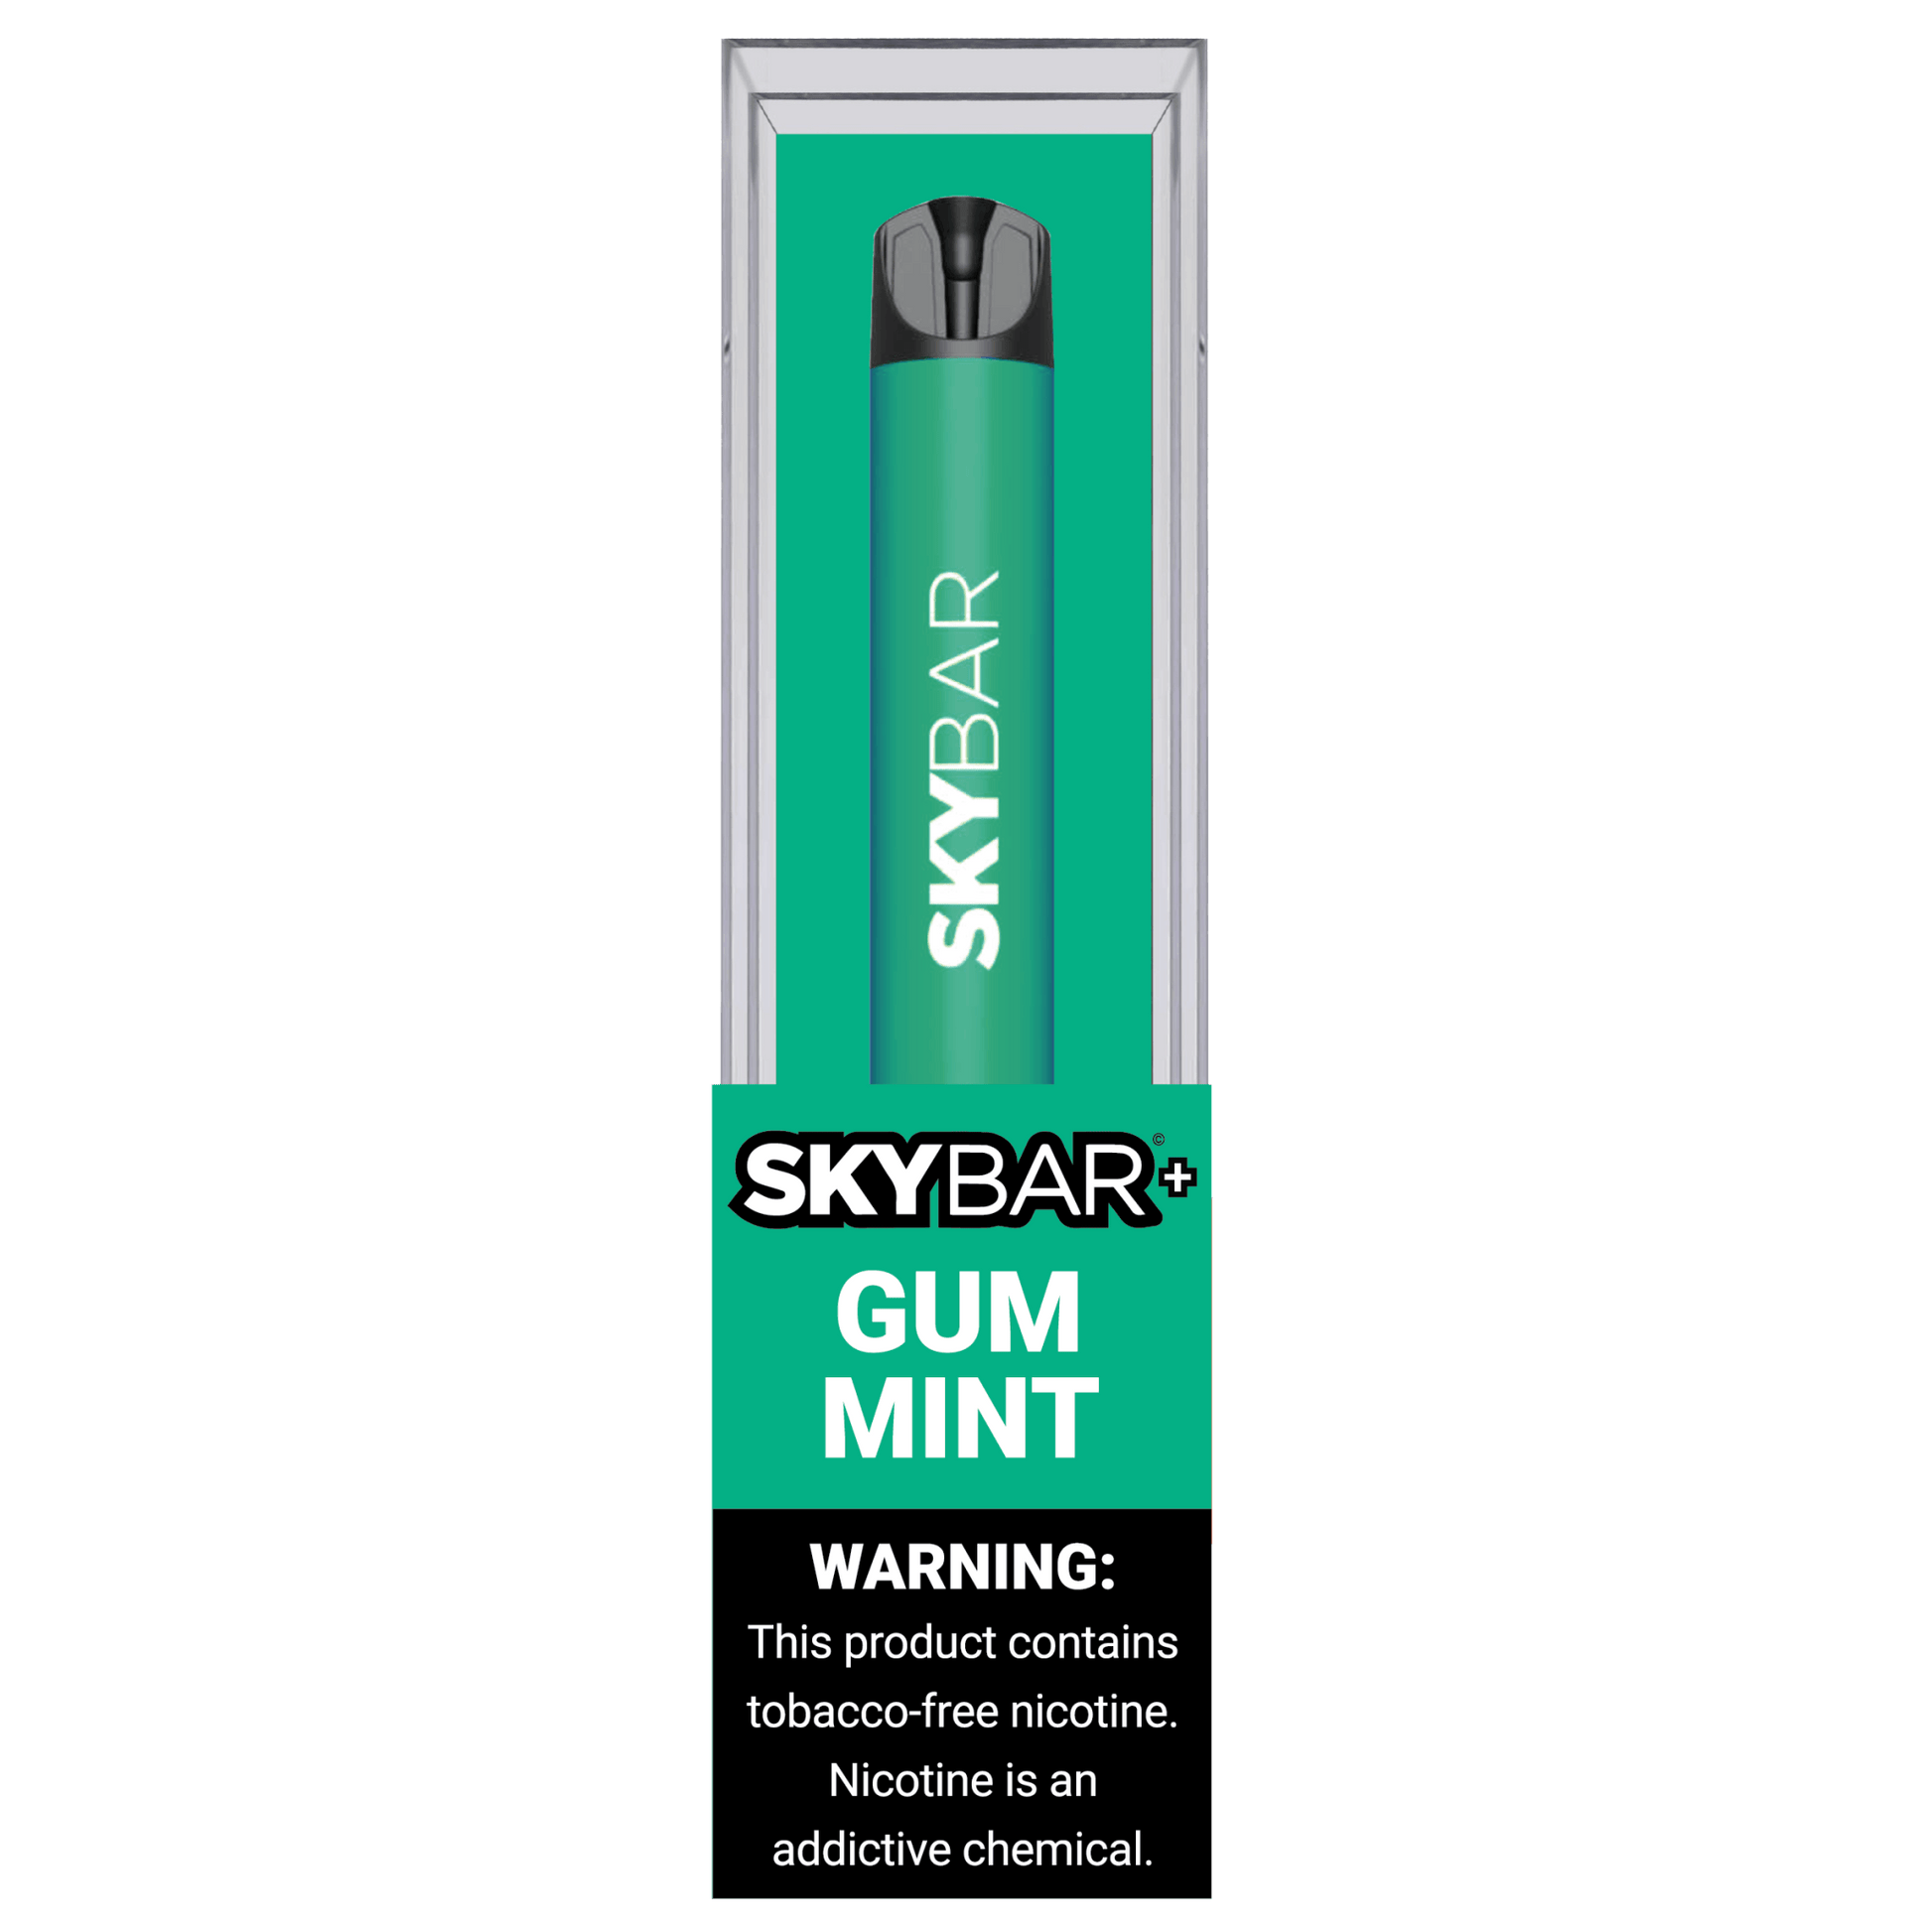 5% NICOTINE - Skybar+ - Skybar